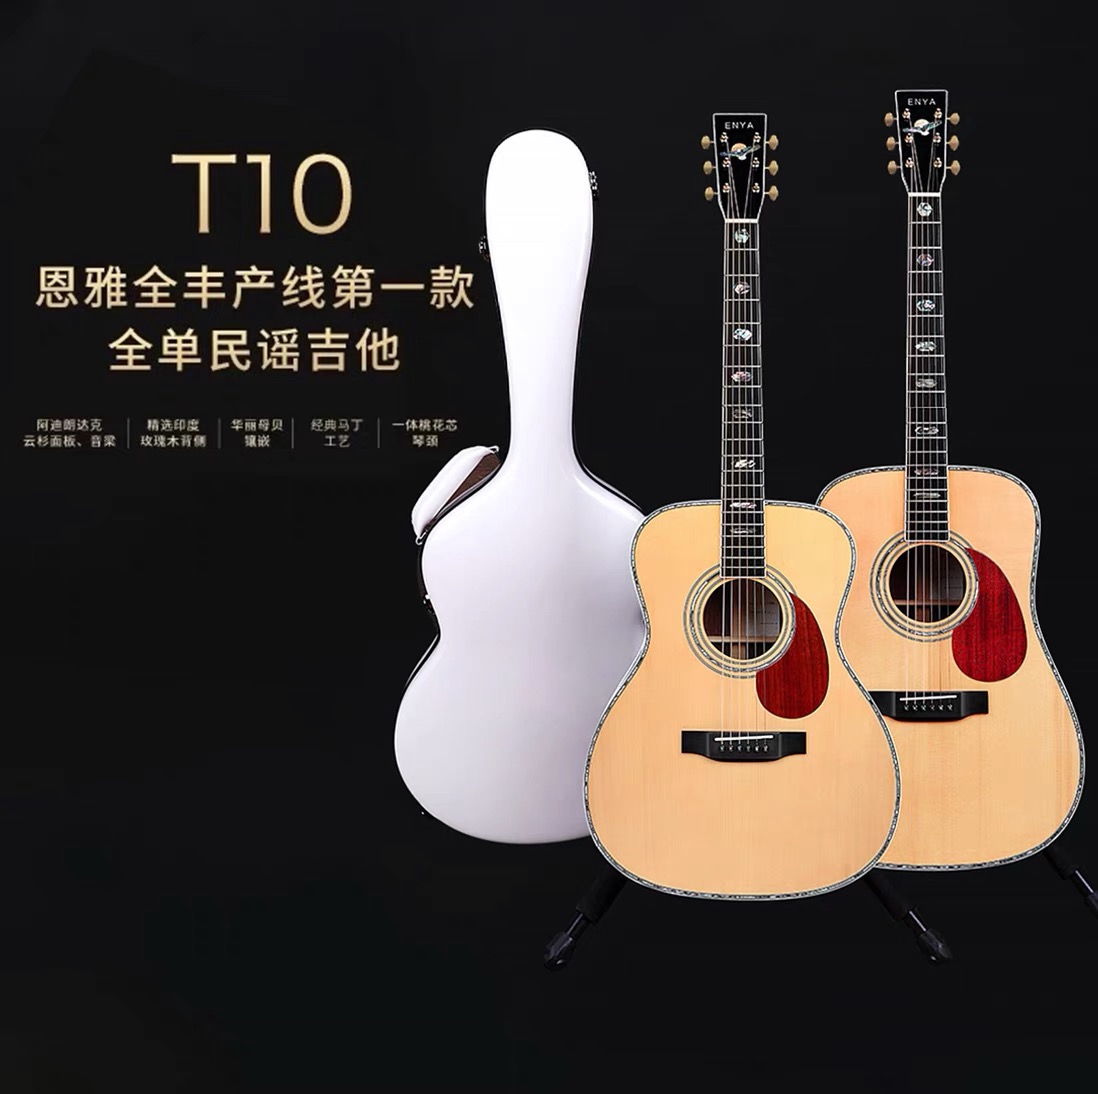 大徐吉他 ENYA恩雅致敬系列T10/S全单民谣木吉他41寸专业演奏电箱